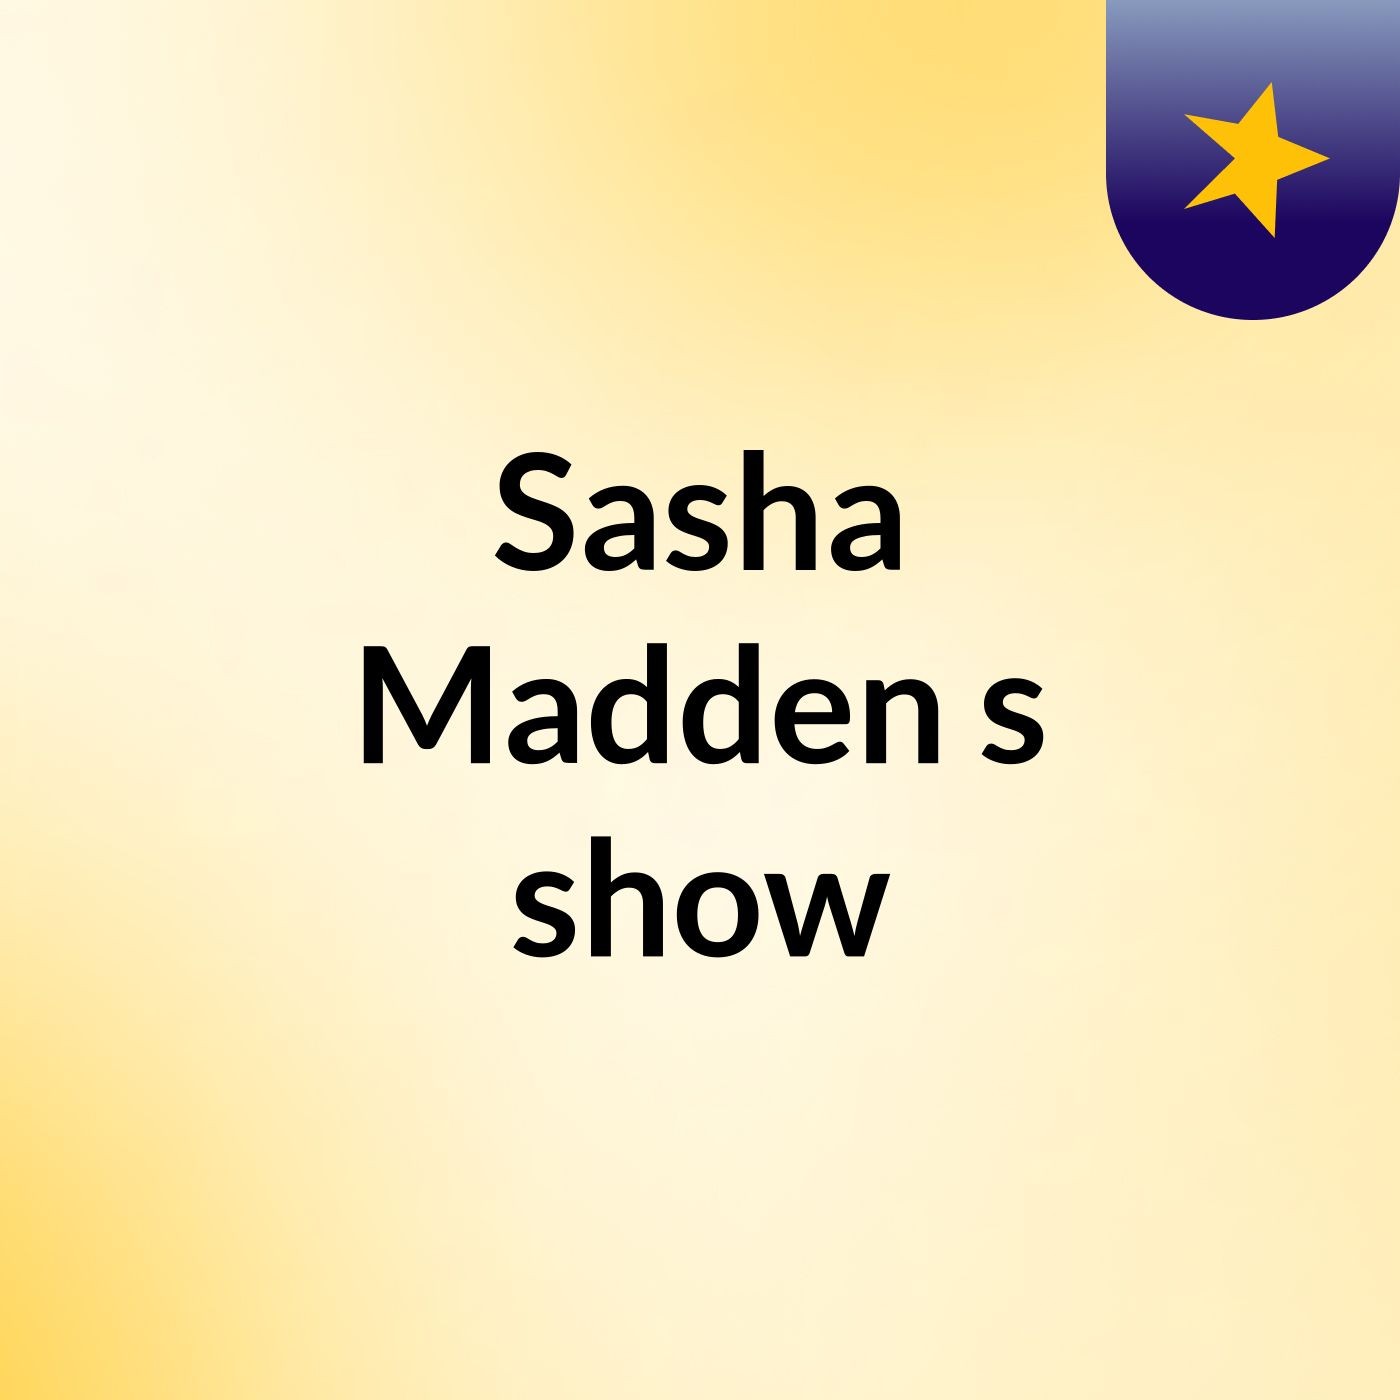 Sasha Madden's show